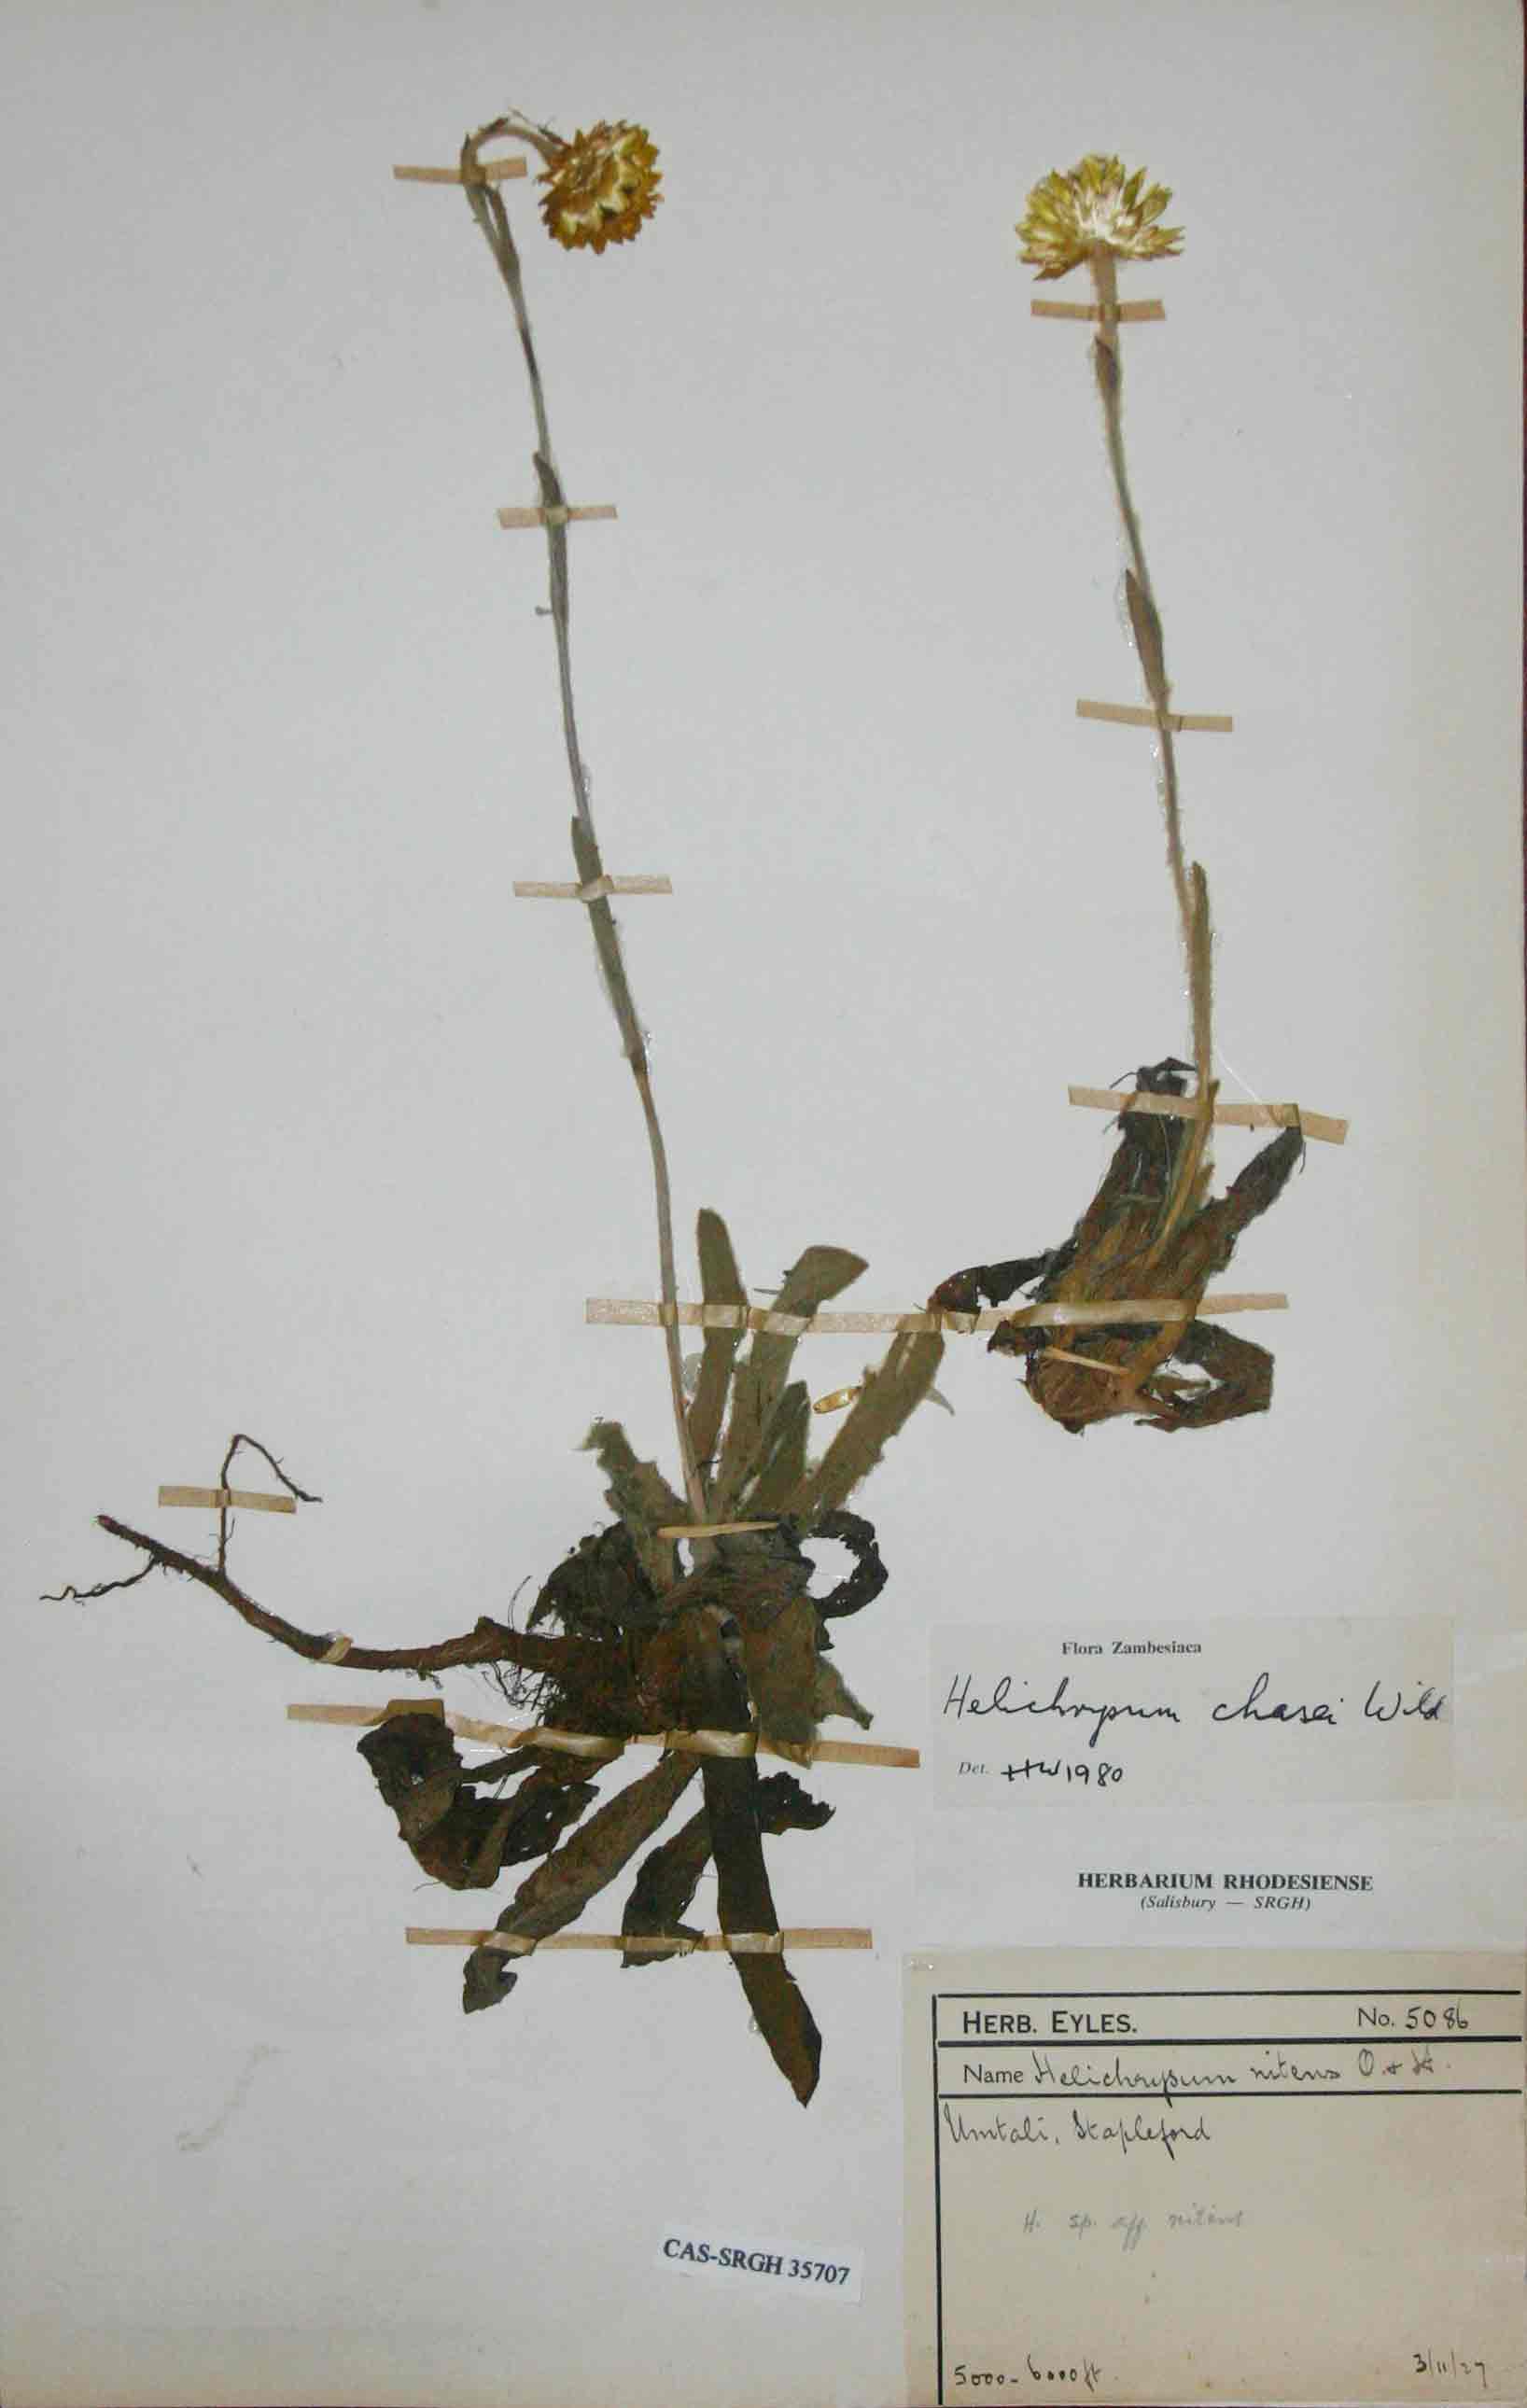 Helichrysum chasei